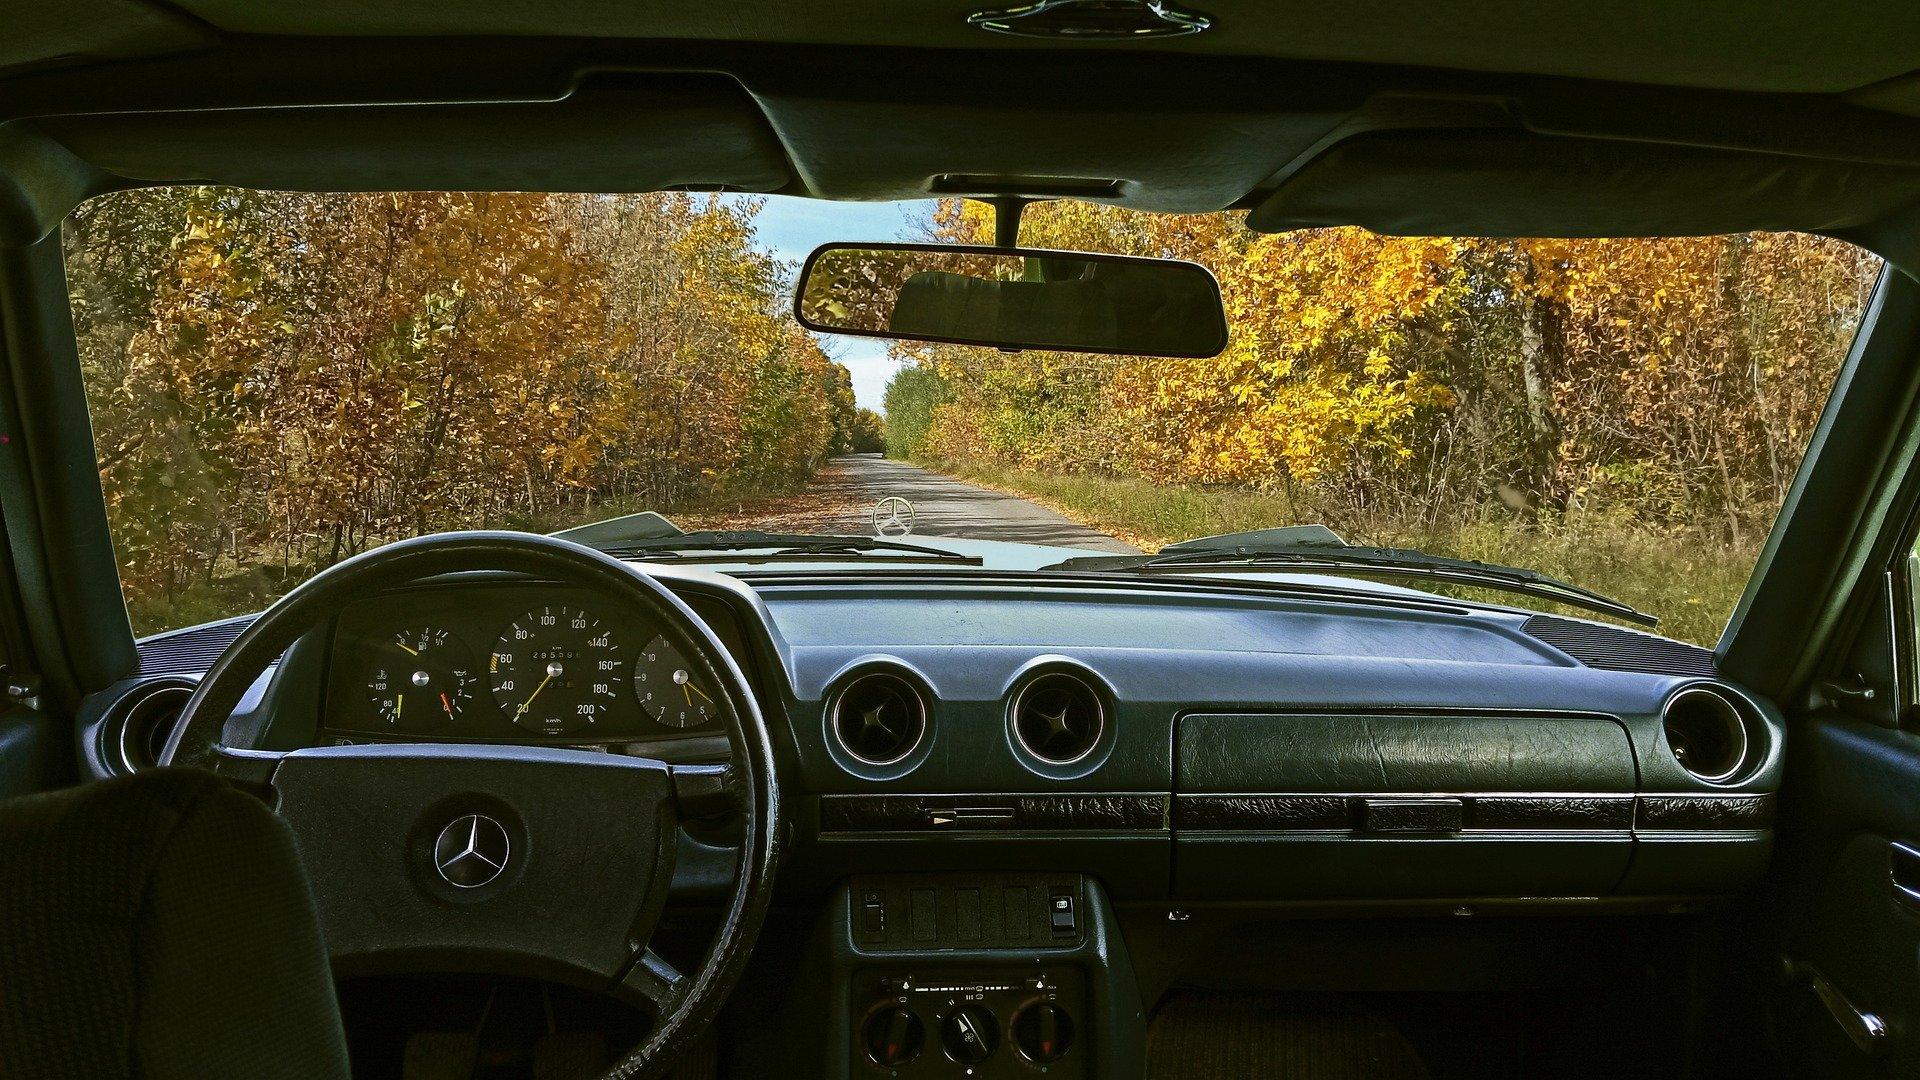 Fahrt in einem Mercedes Auto durch bewälderte Landschaft aus Sicht des Fahrers